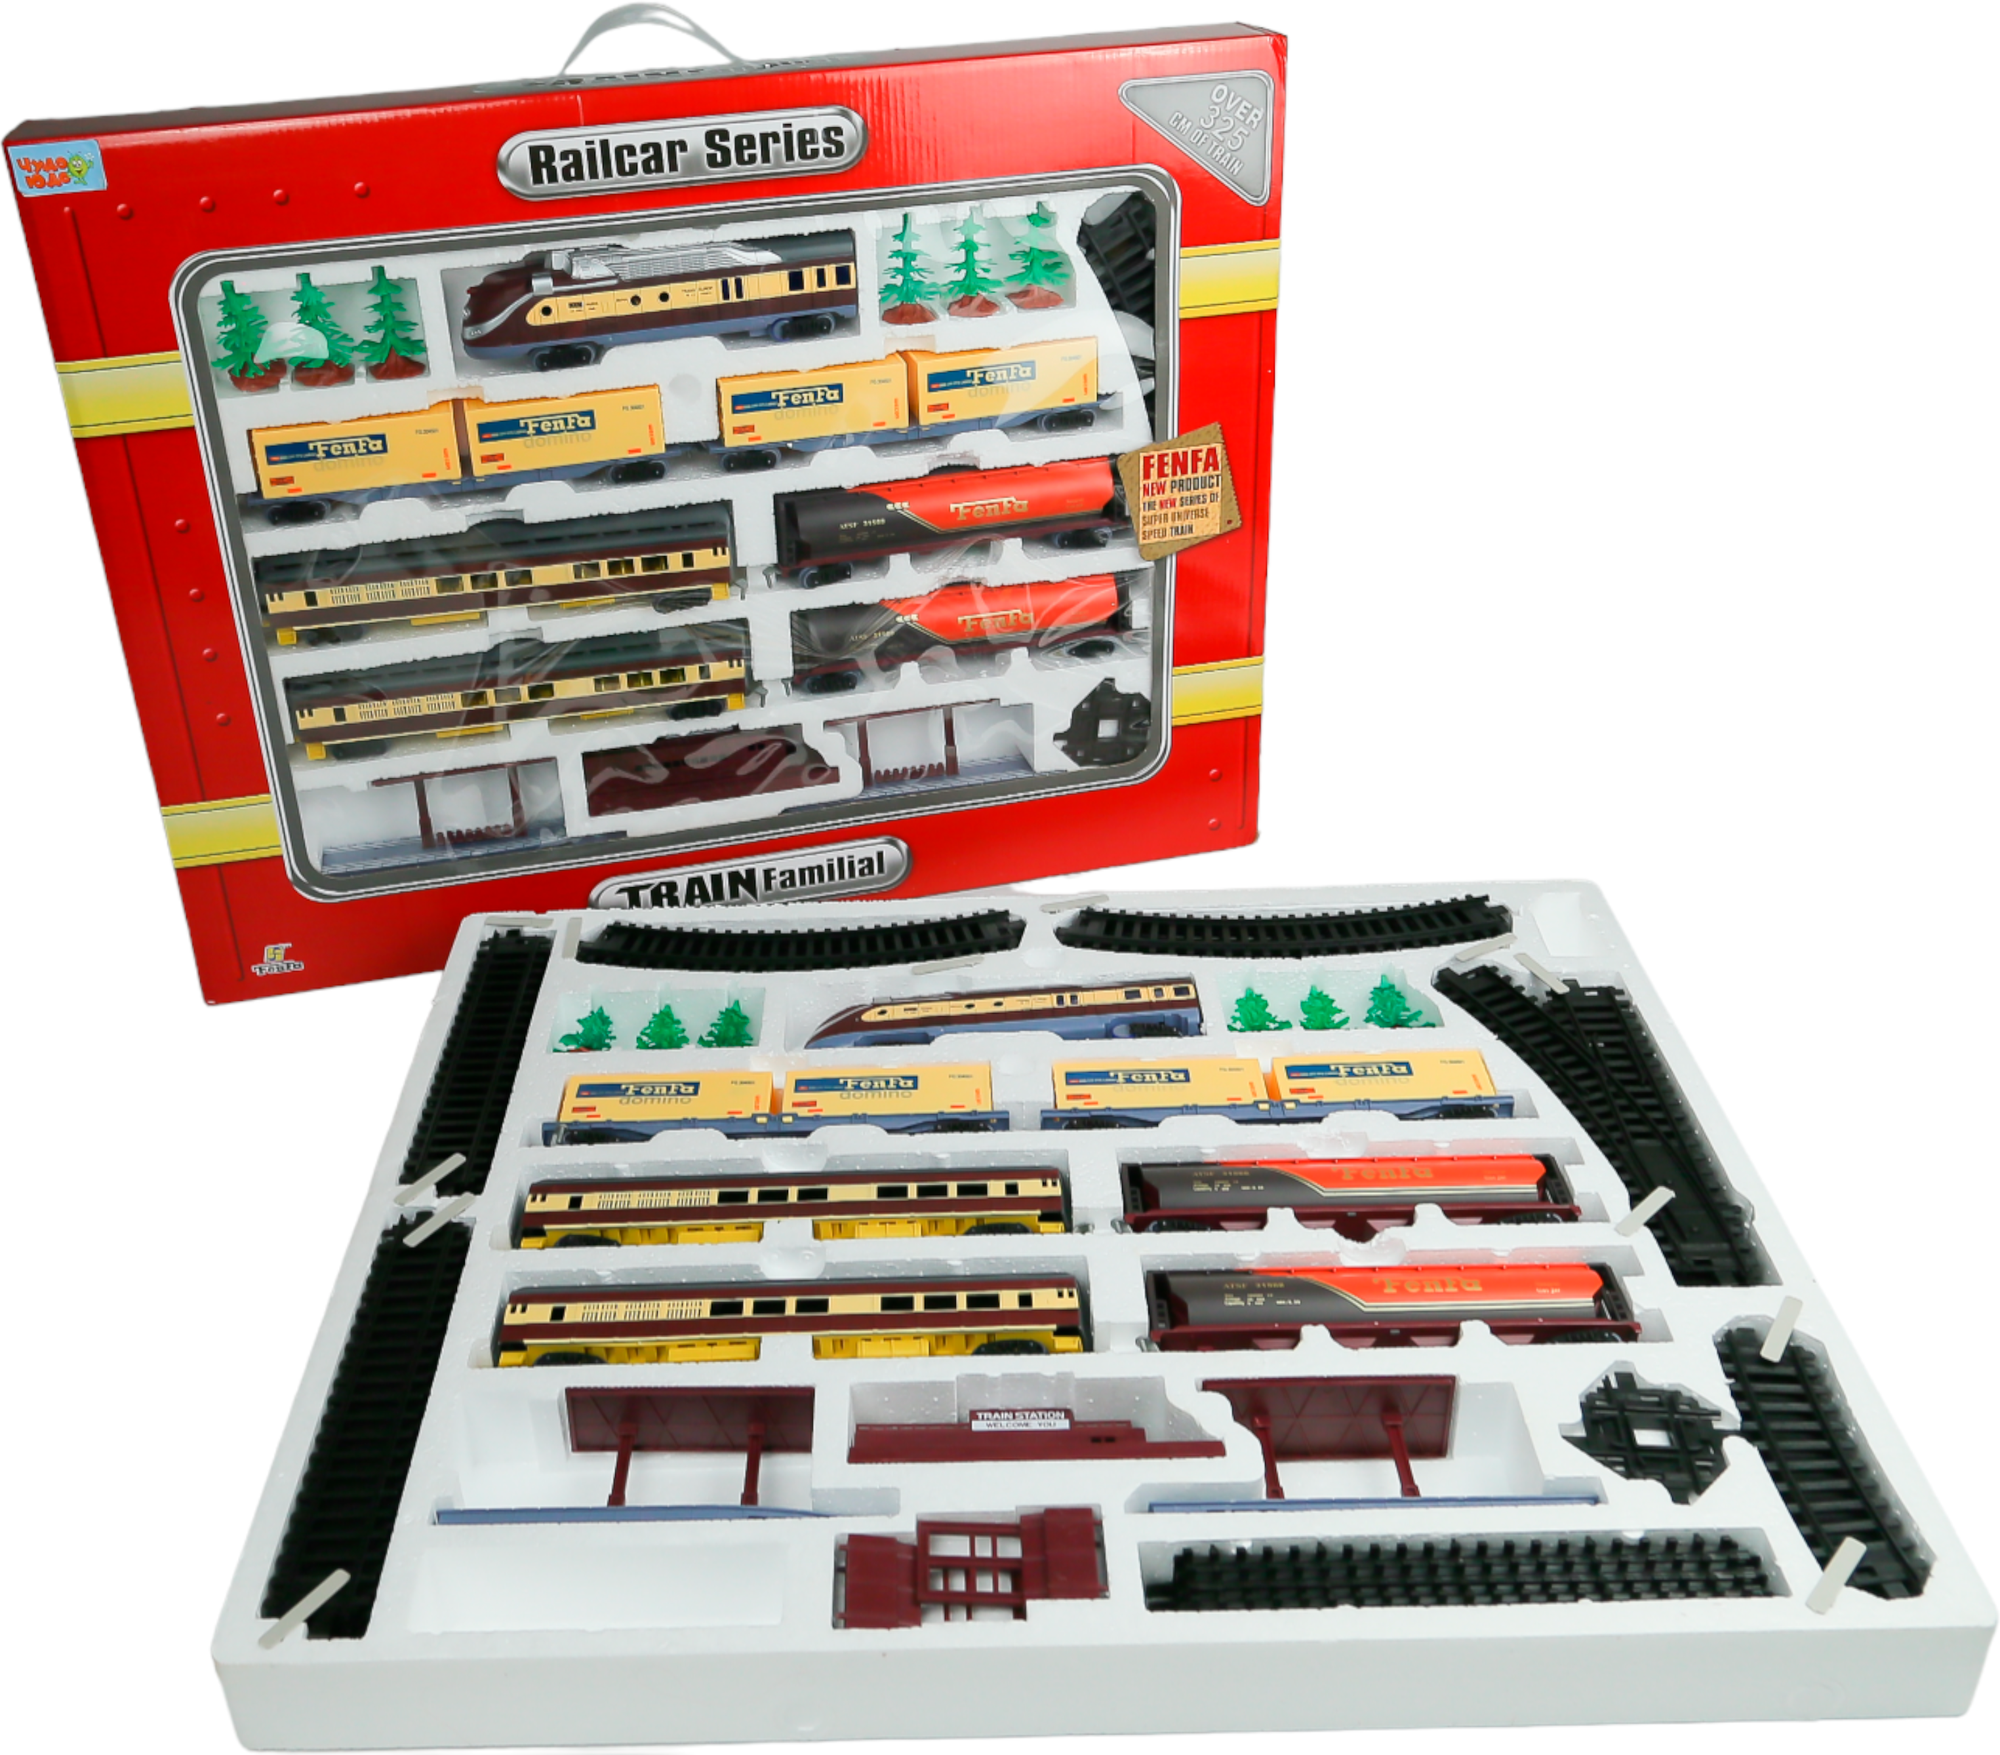 Игрушка Железная дорога FENFA поезд с вагонами, свет, звук, работает от батареек, длина пути 325 см, масштаб 1:87, разные варианты сборки полотна